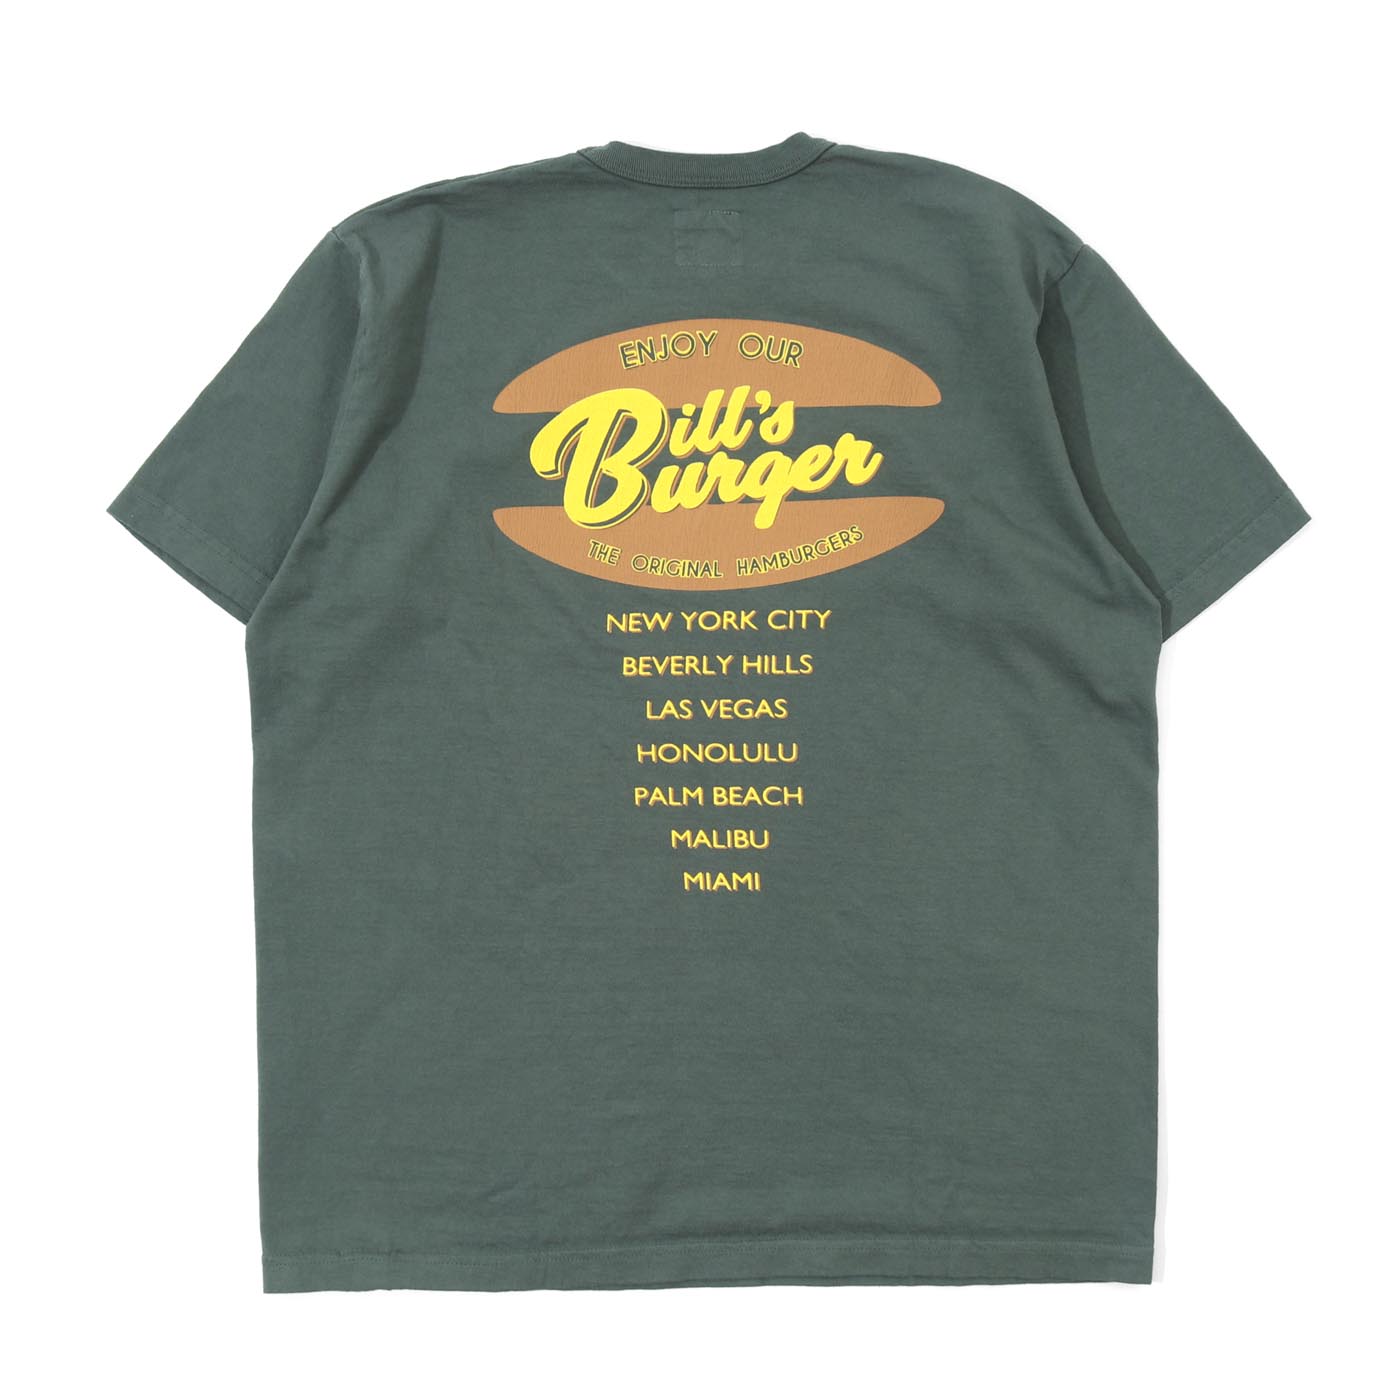 児島ジーンズ 公式通販 BURGER Tシャツ kojimagenes